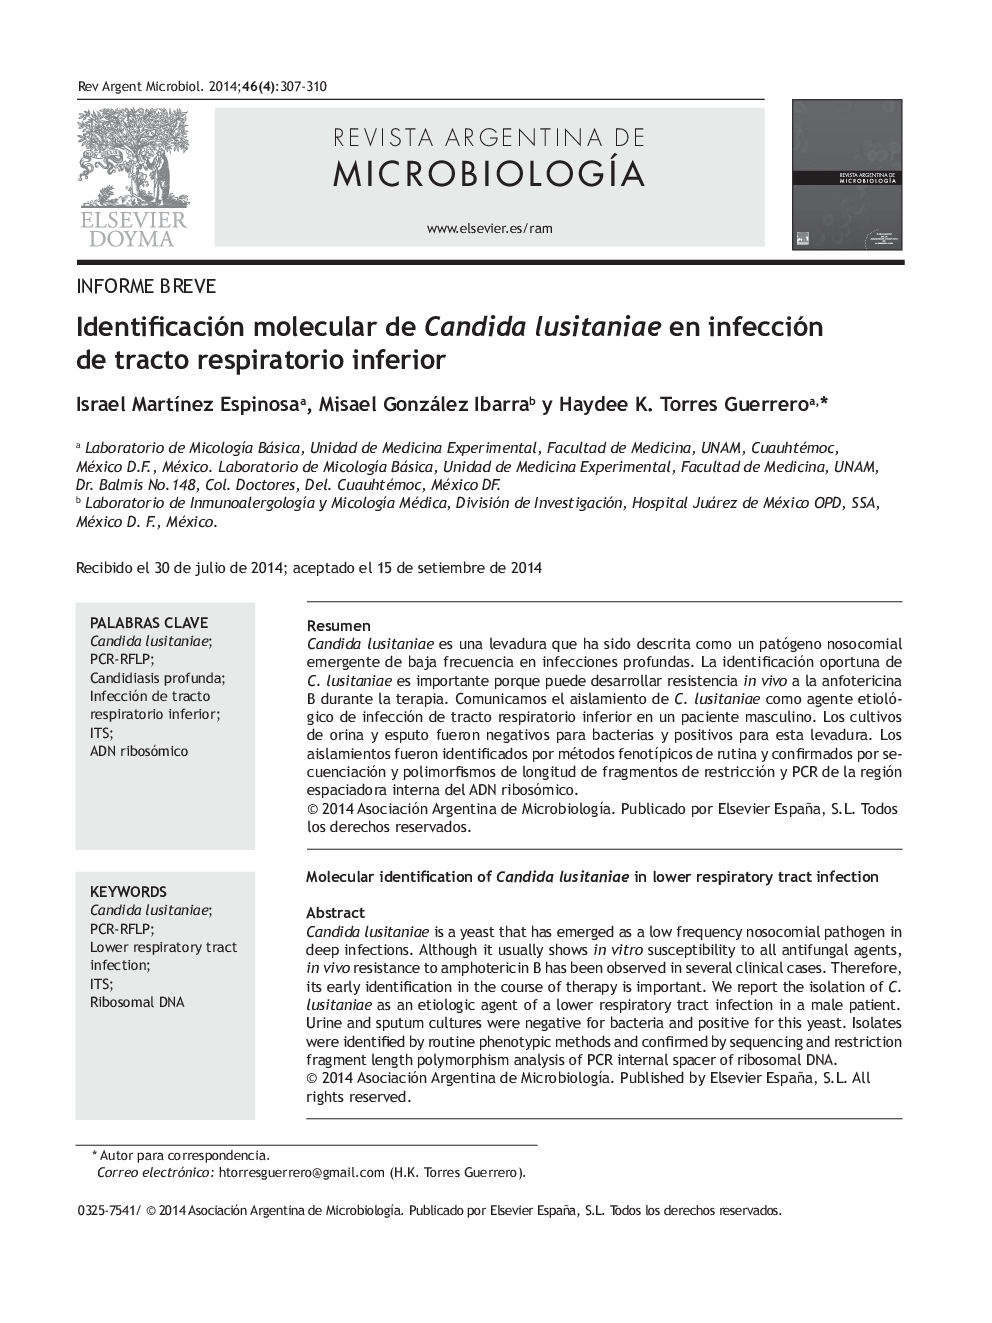 Identificación molecular de Candida lusitaniae en infección de tracto respiratorio inferior